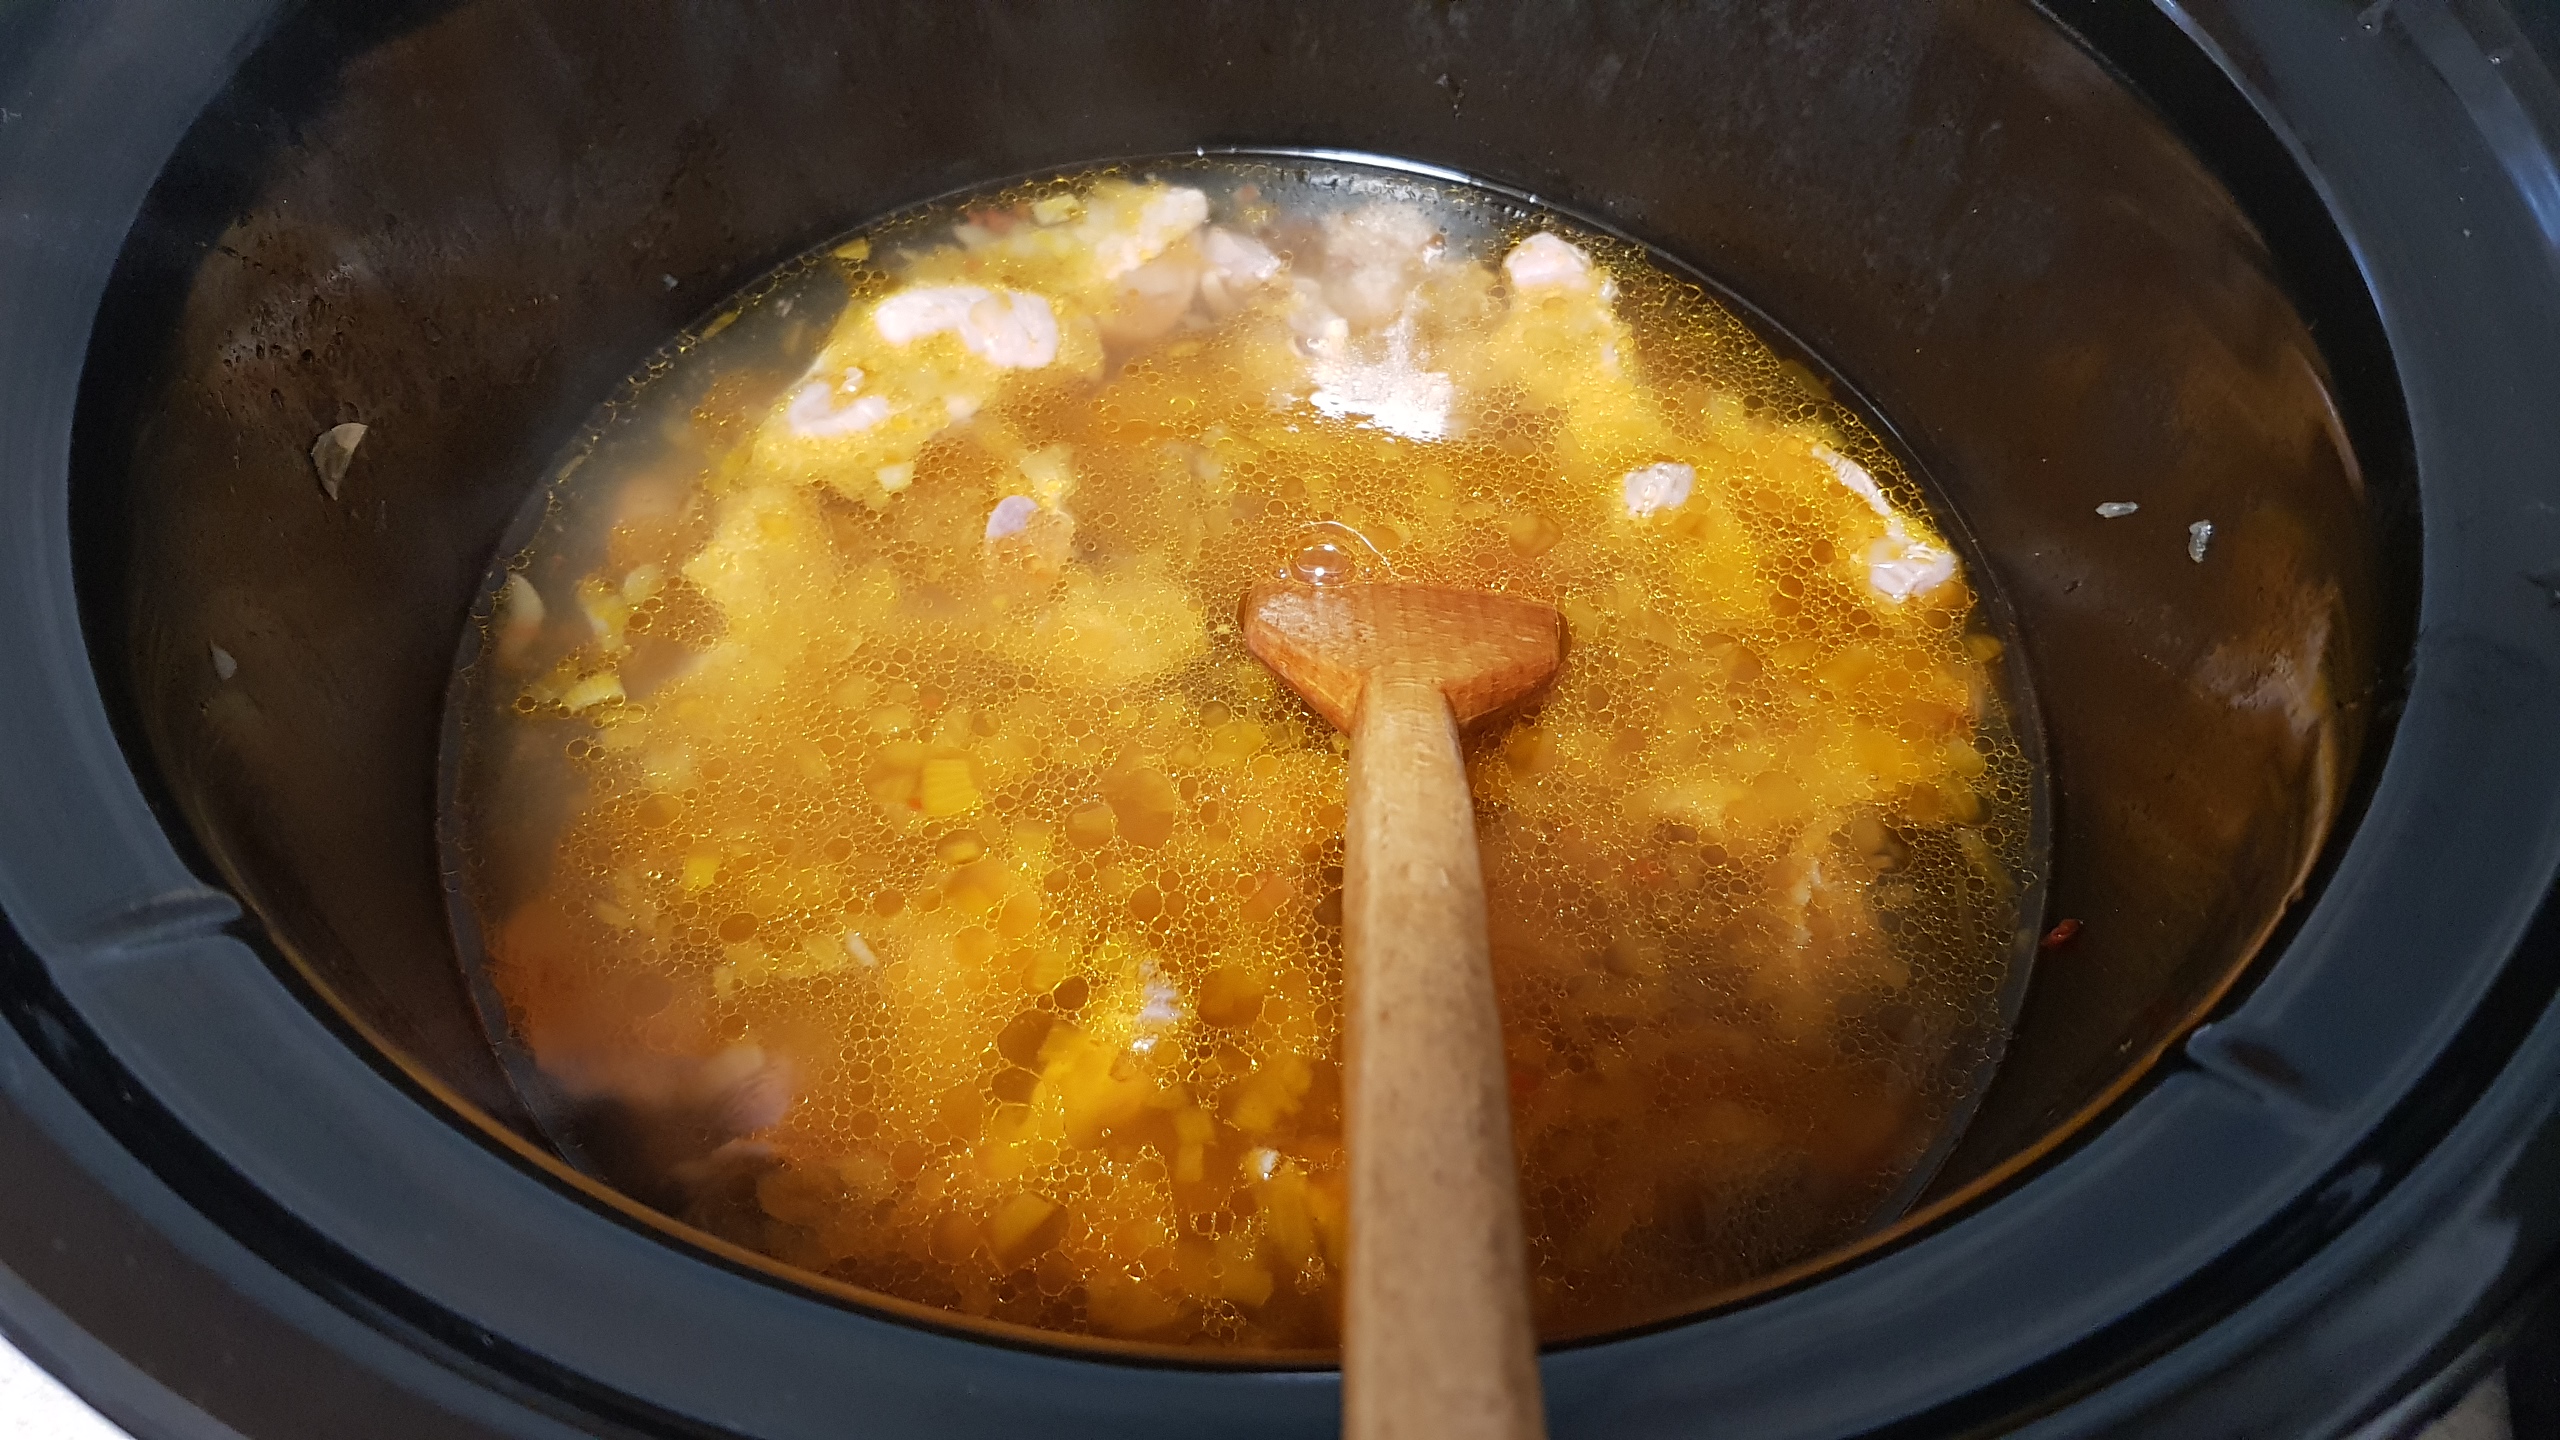 Tocanita de pipote la slow cooker Crock Pot